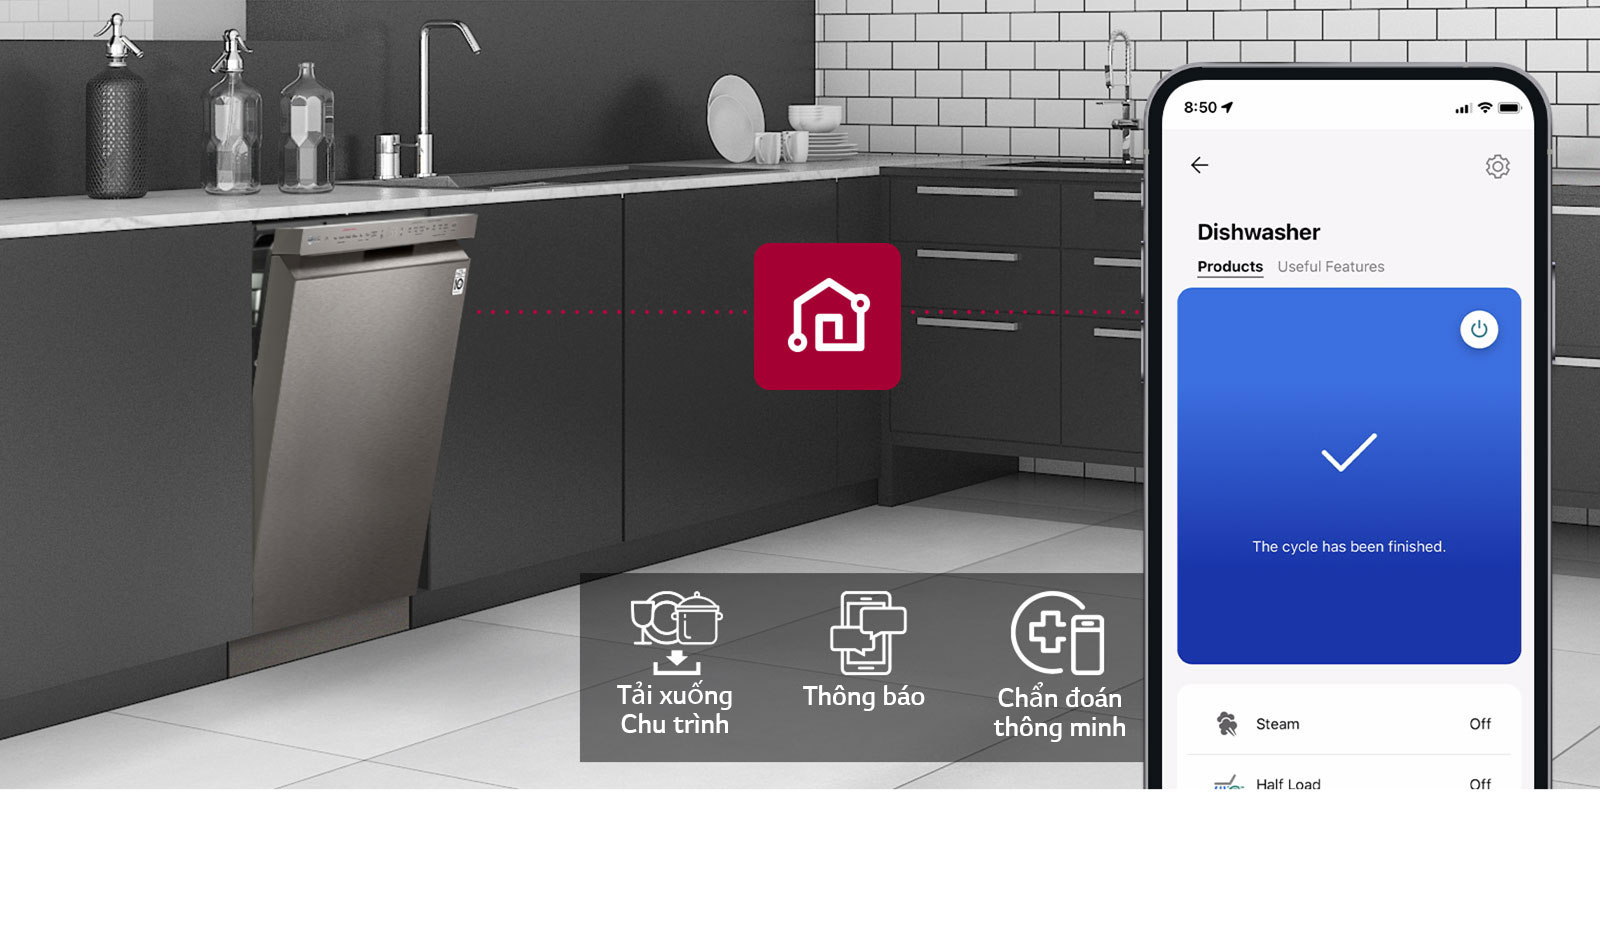 Điện thoại thông minh hiển thị LG ThinQ™ trong nhà bếp cùng với 3 tính năng ứng dụng: Tải xuống Chu trình, Thông báo và Chẩn đoán thông minh. 